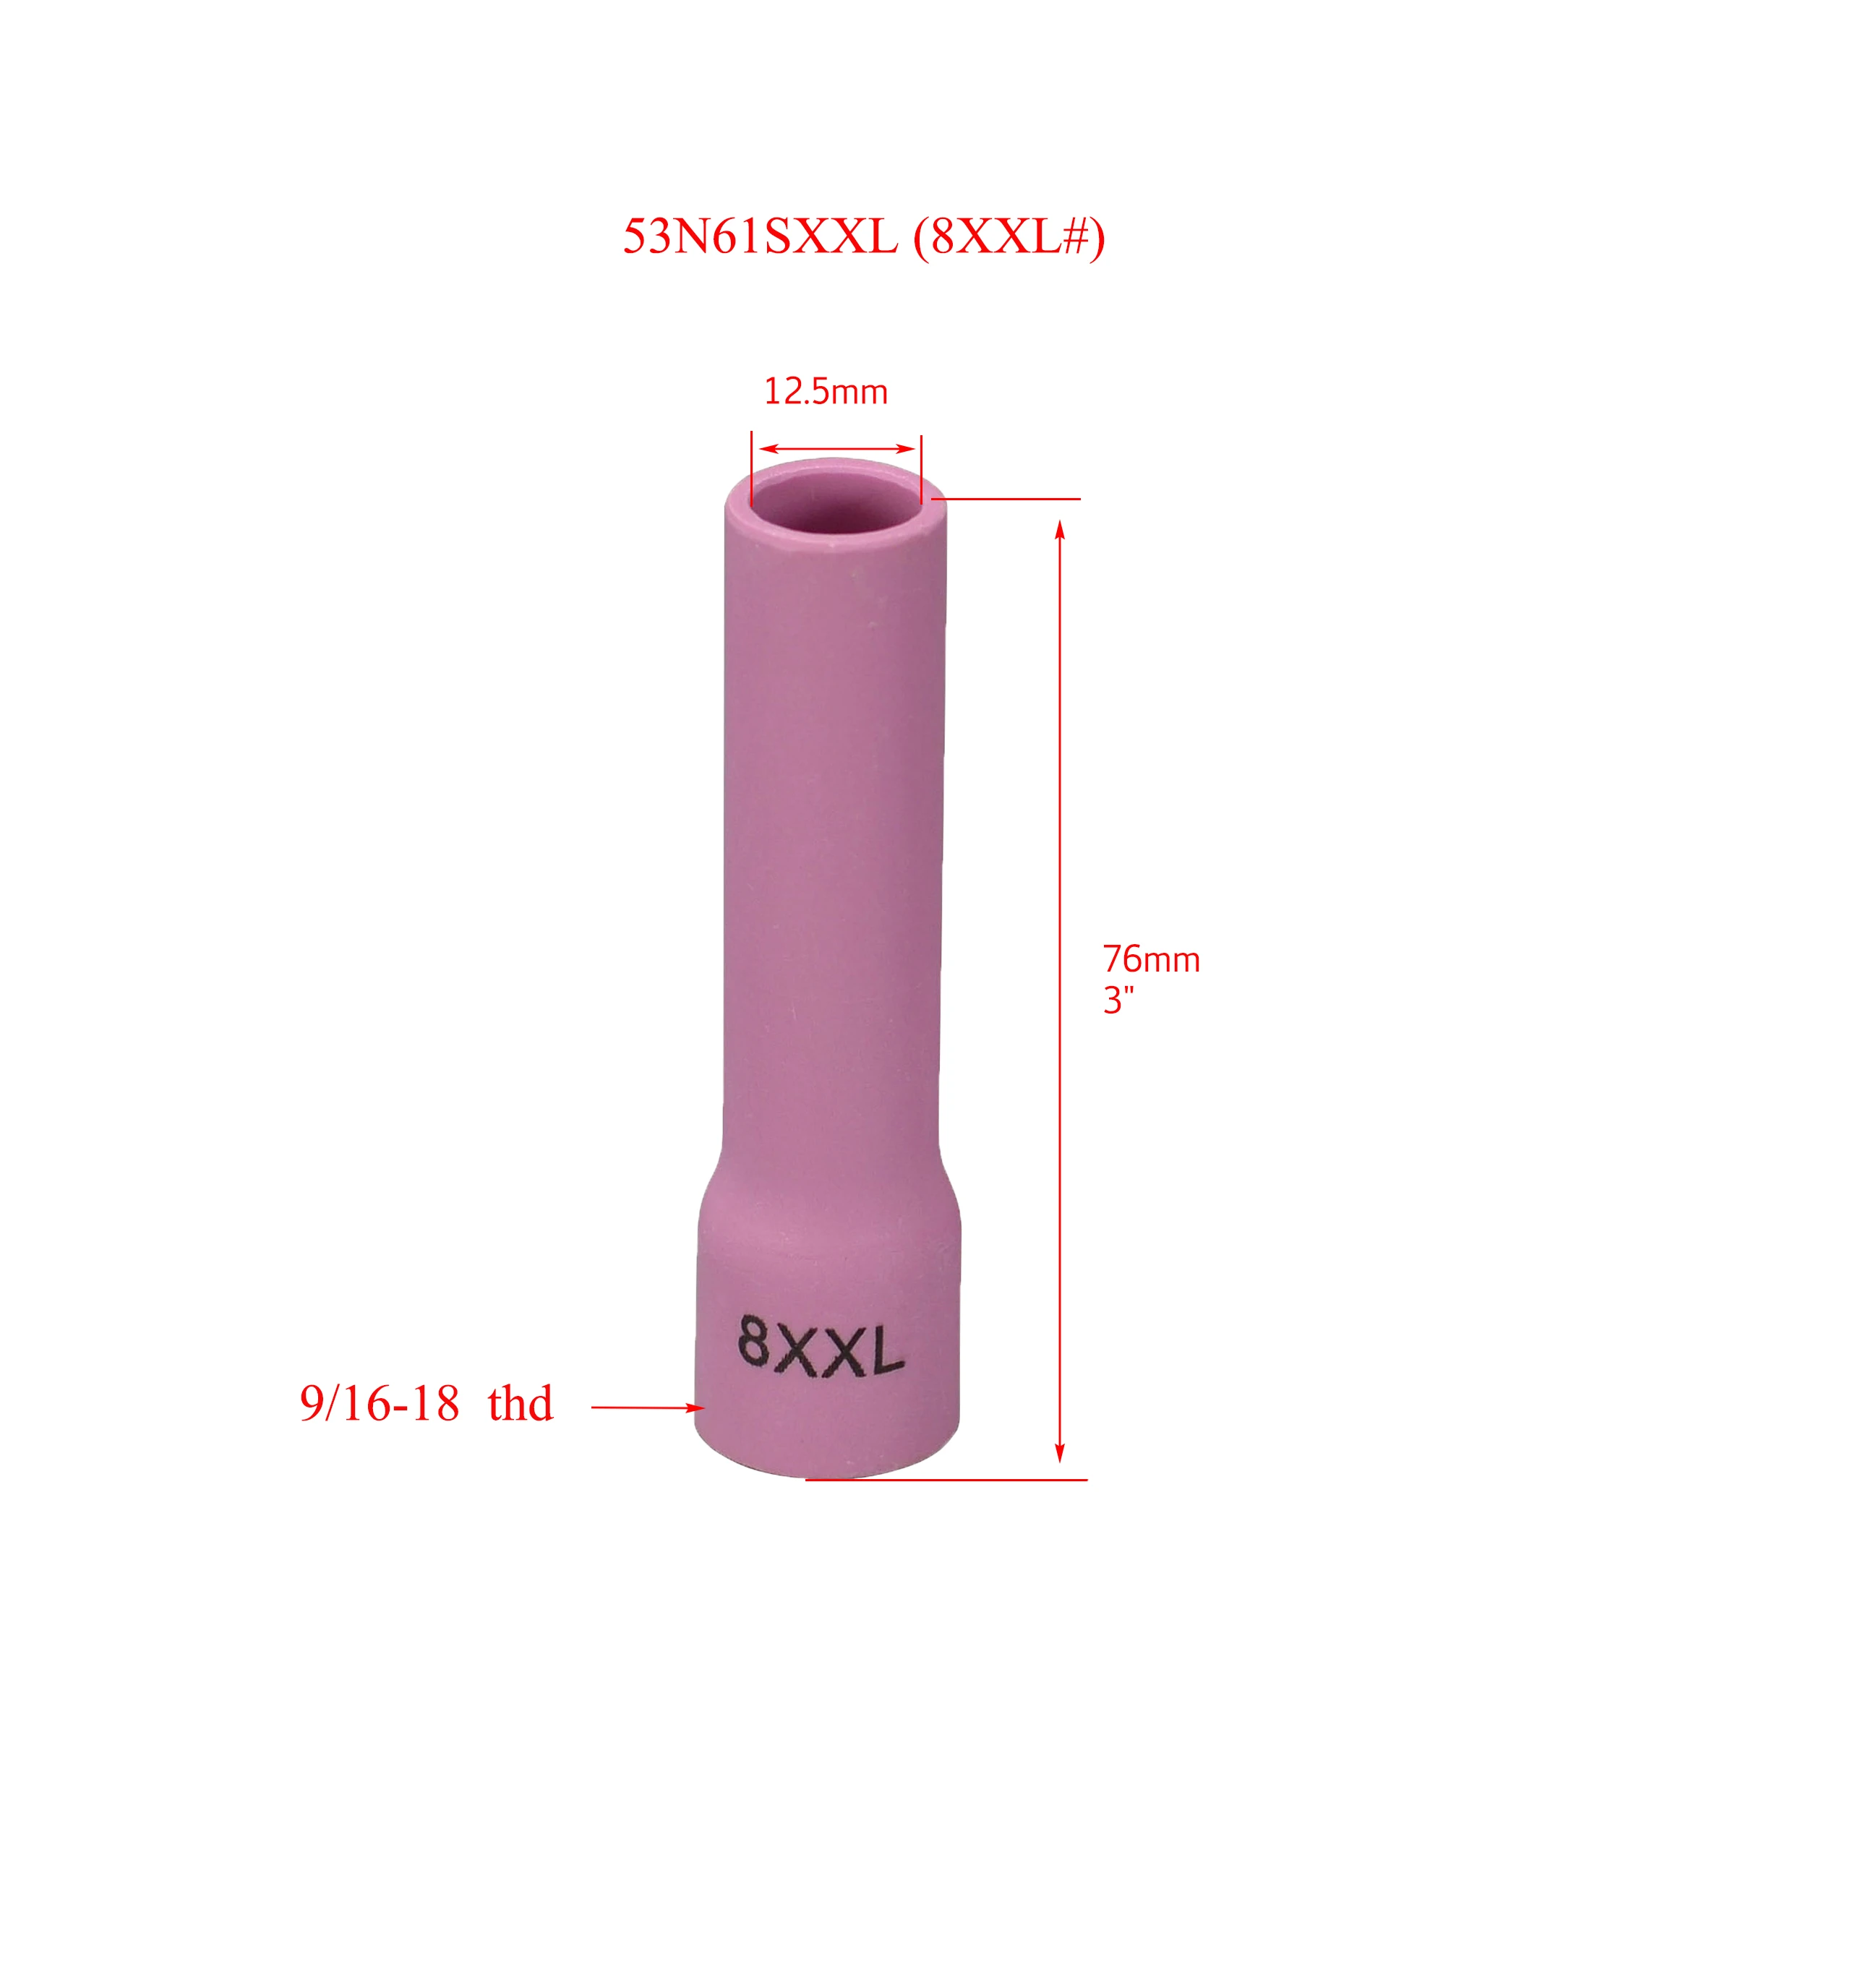 Gas de la Lente de la alúmina de la Boquilla de Cerámica Taza Extra Largas 53N61SXXL (8XXL 1/2